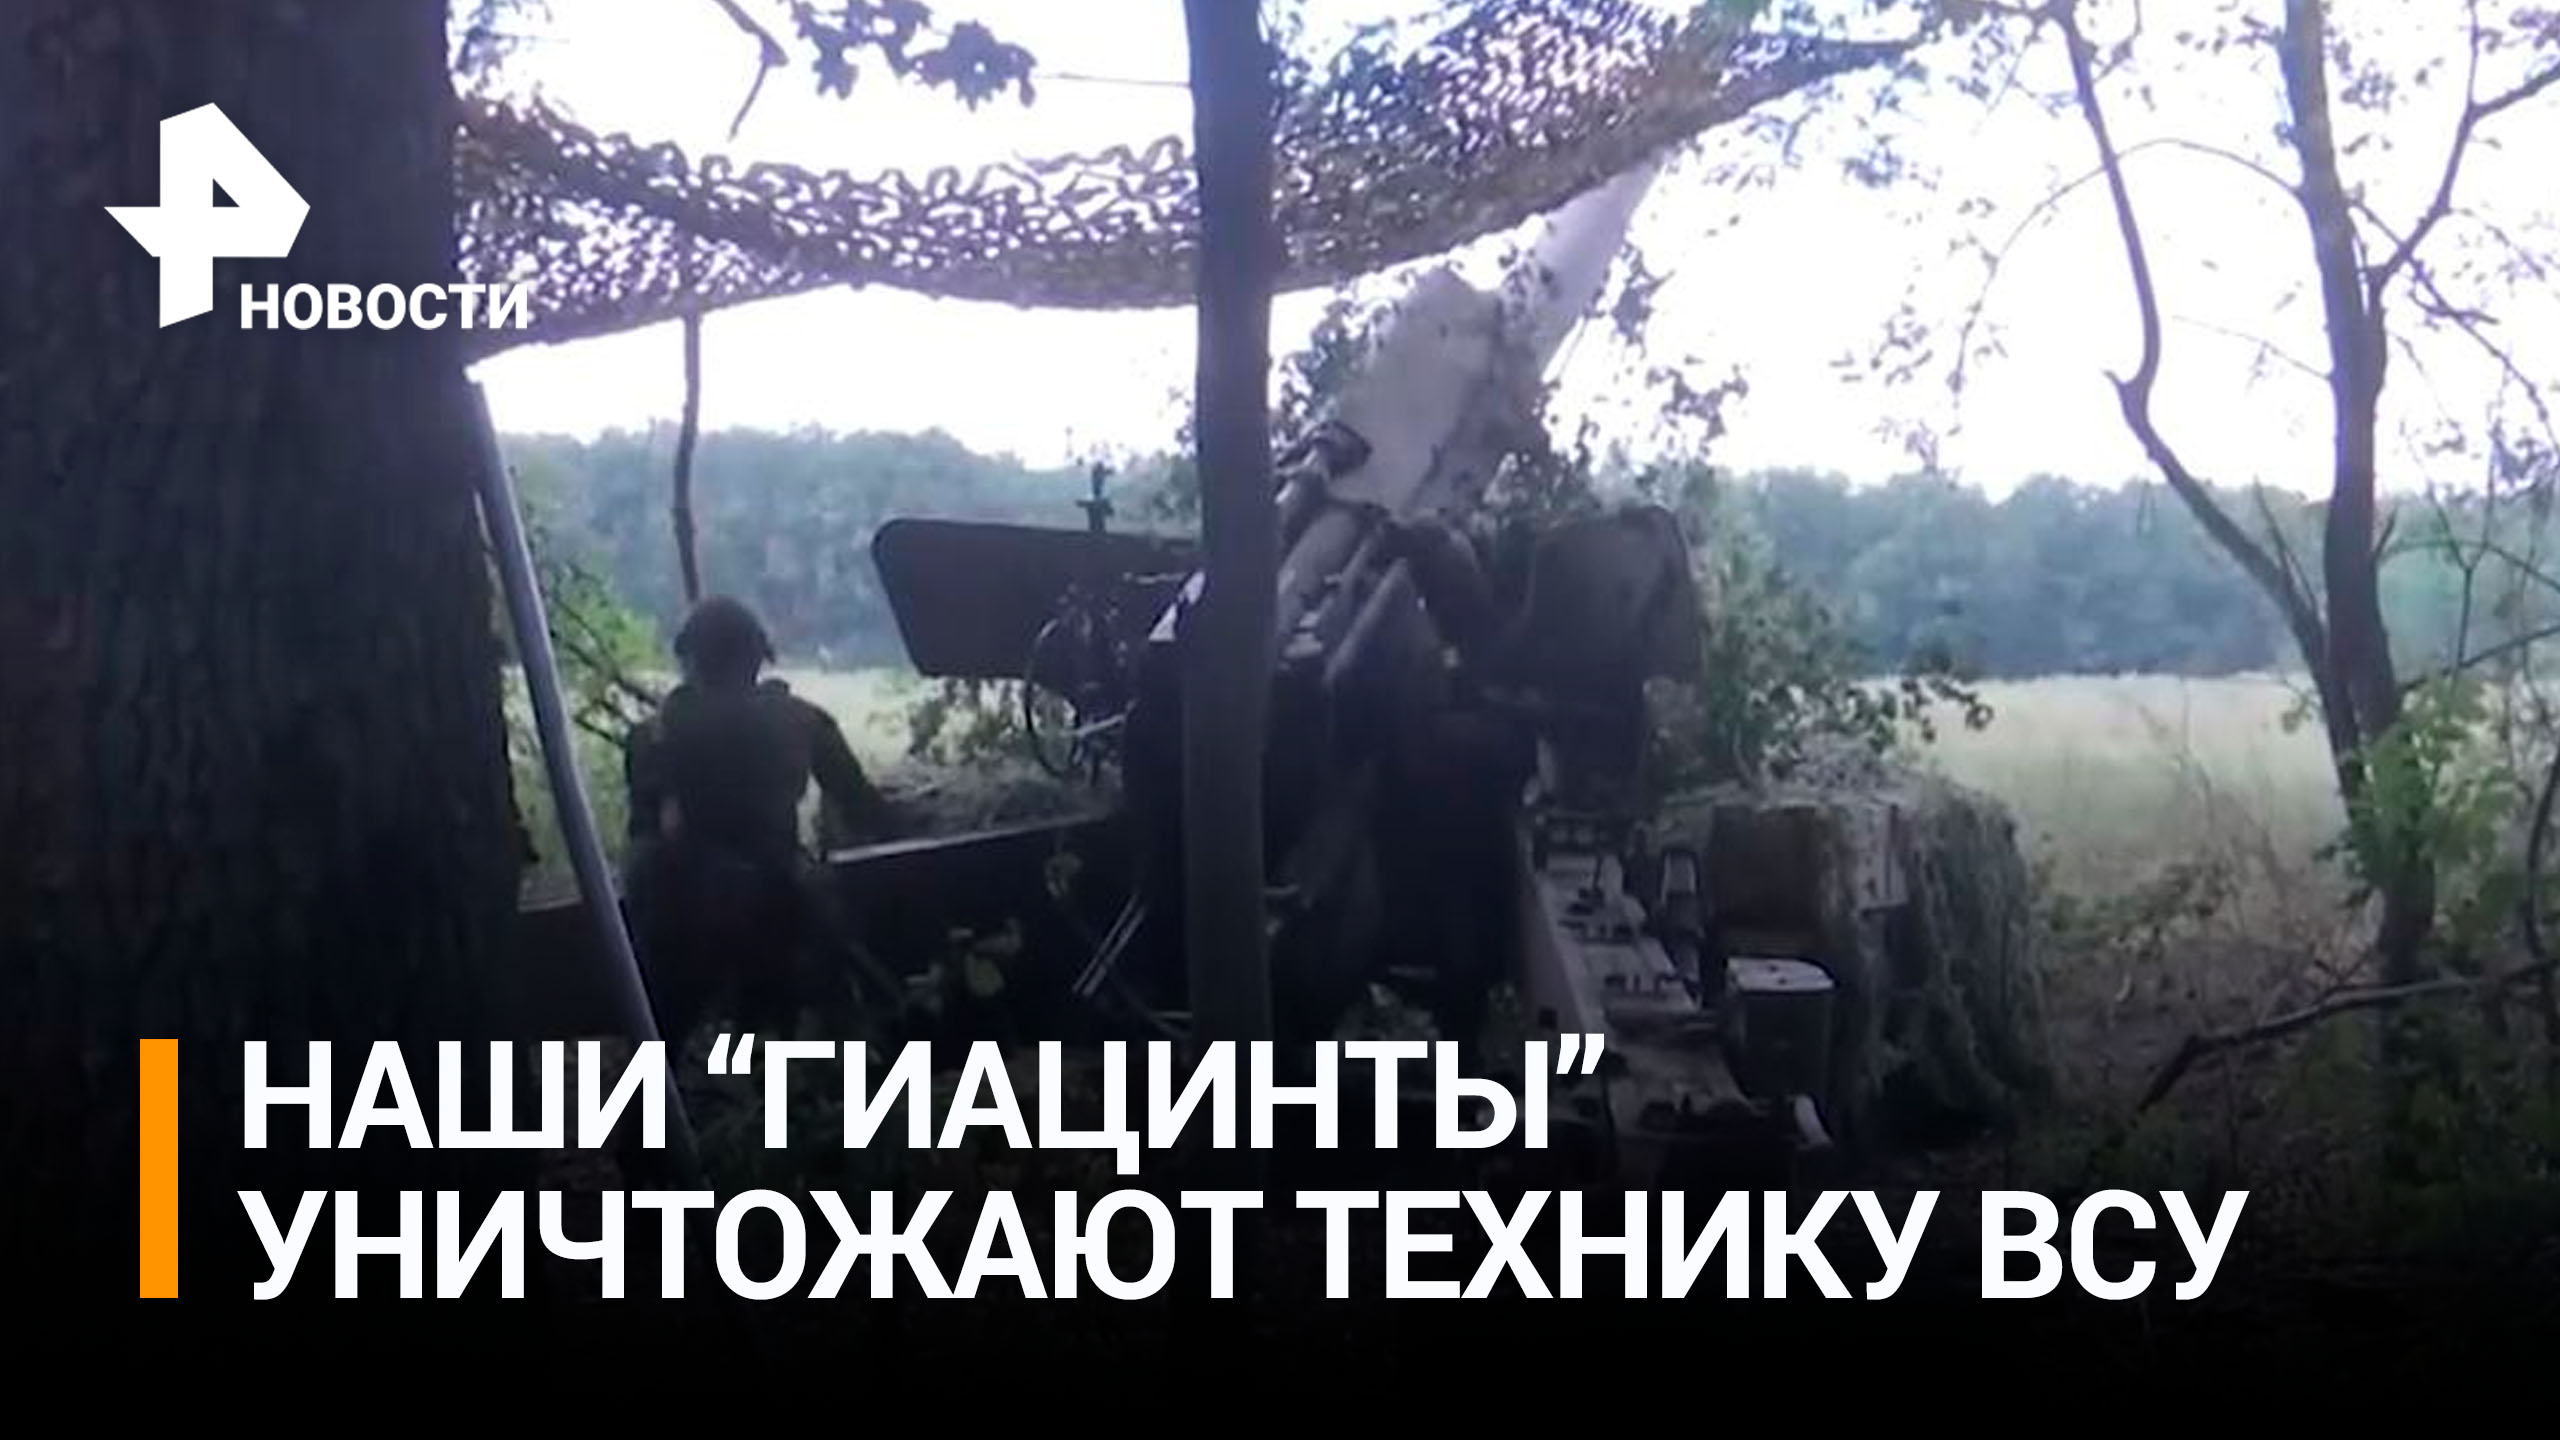 Артиллеристы из "Гиацинтов" уничтожили технику ВСУ под Угледаром / РЕН Новости